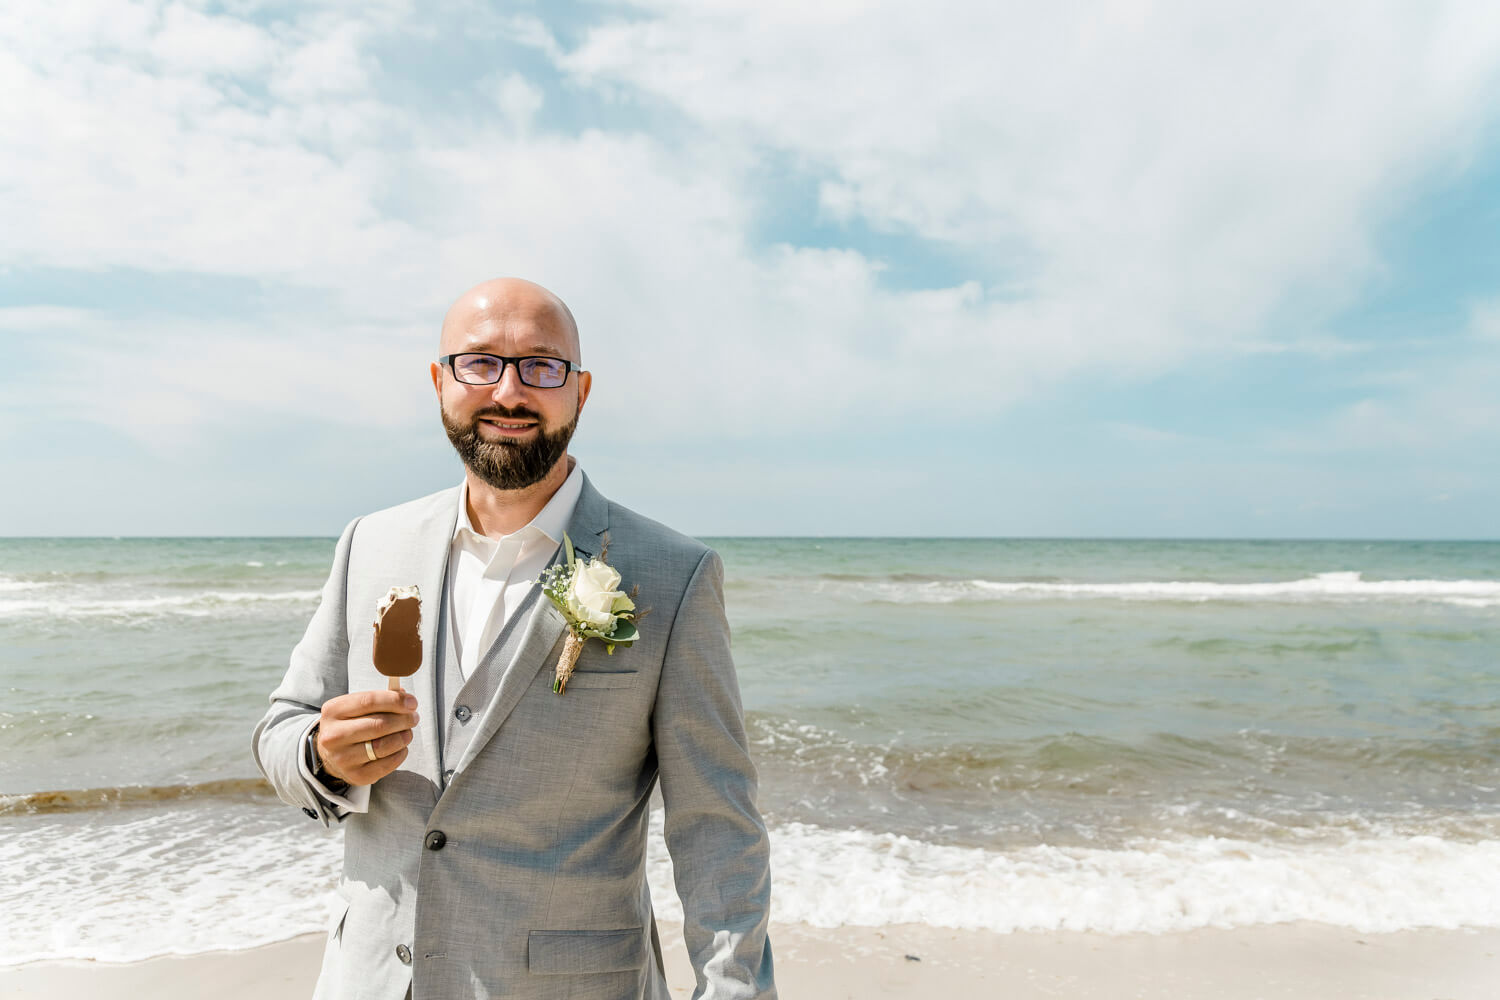 Der Bräutigam isst ein Eis am Hochzeitstag am Strand. Authentische Hochzeitsfotografie.